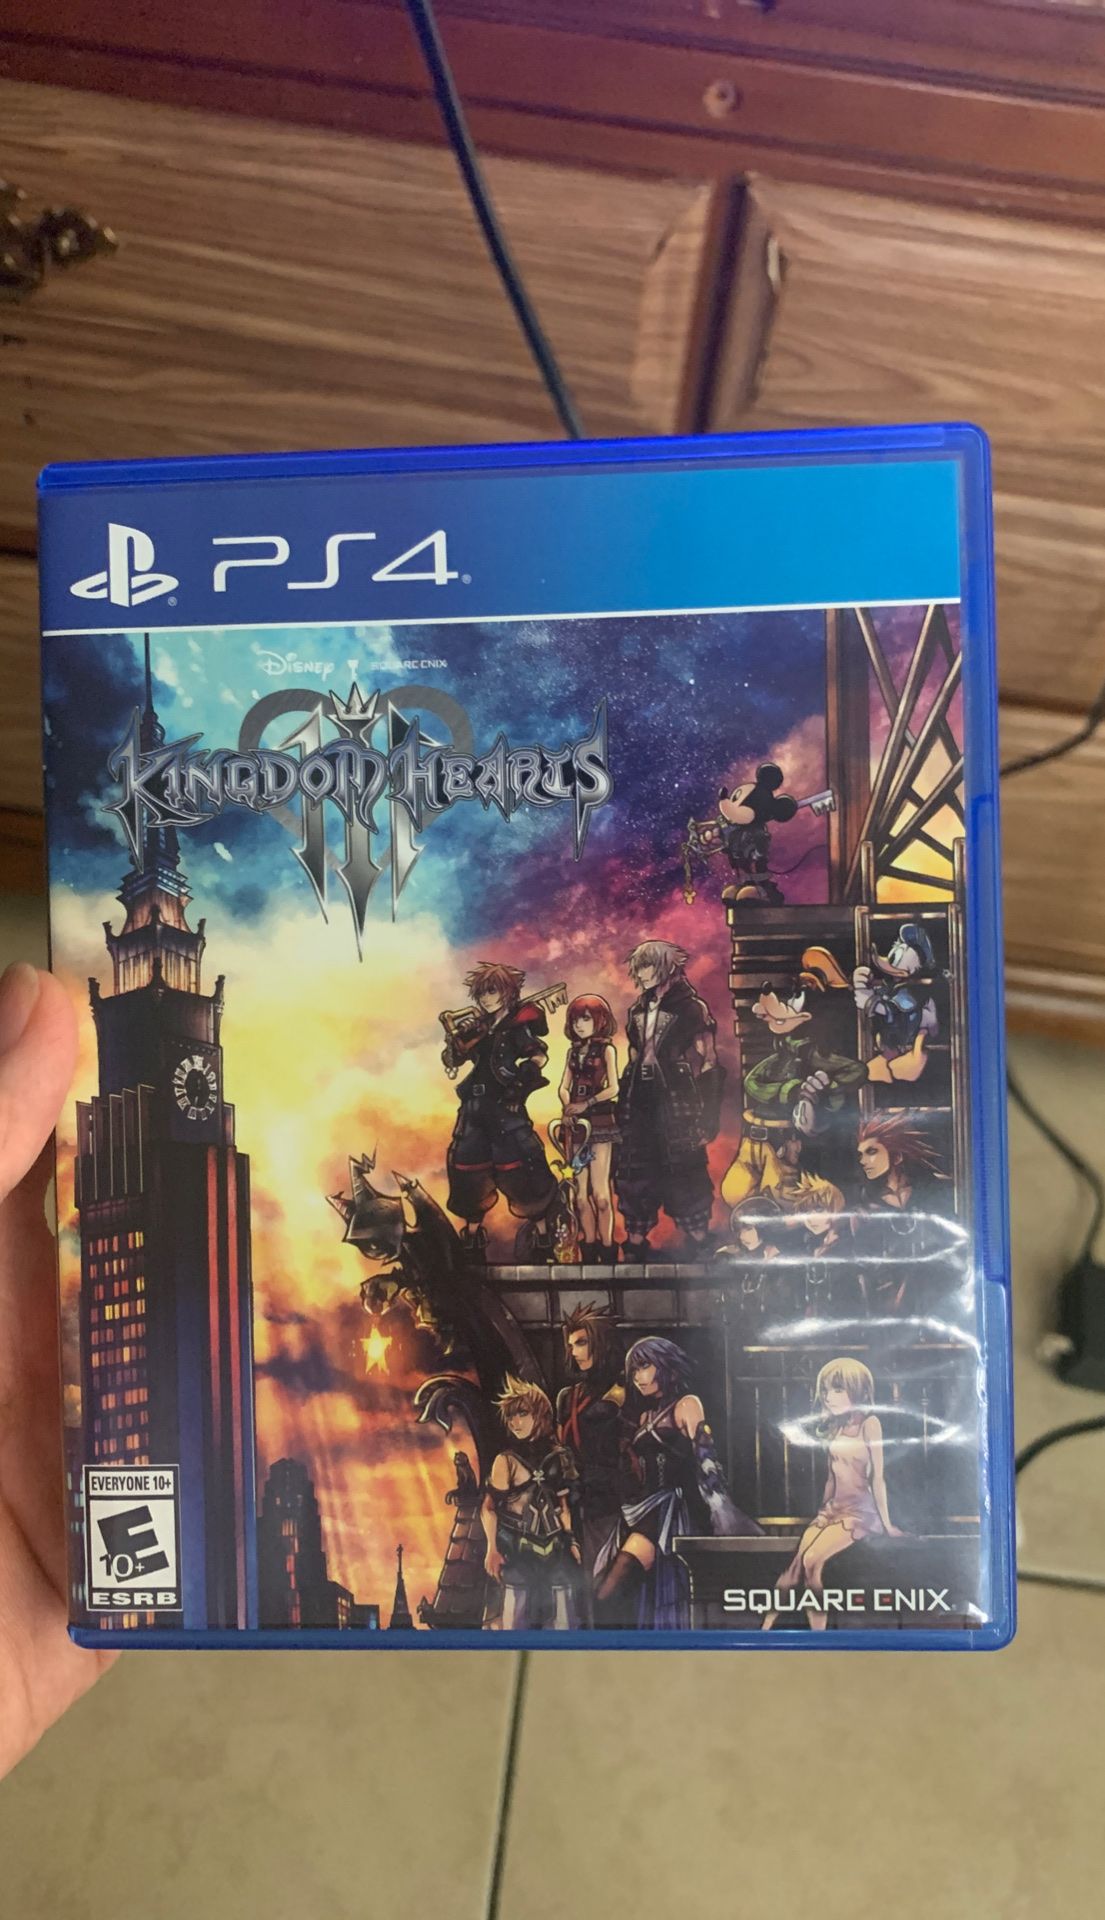 Kingdom Hearts 3 (PS4) $10